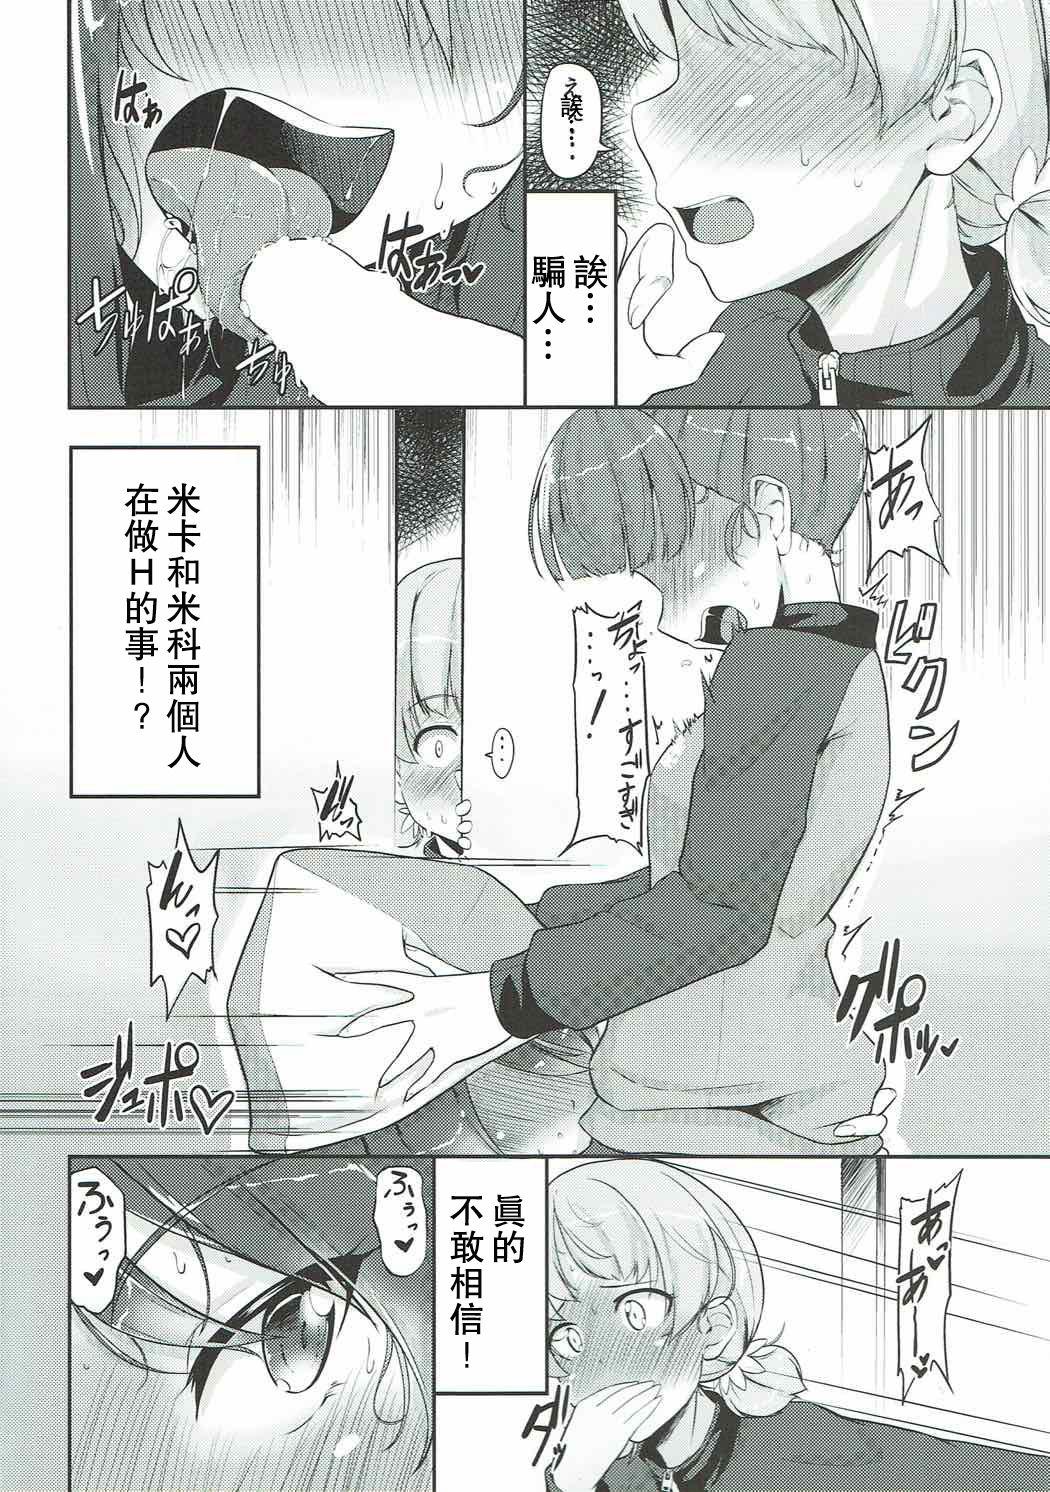 Puto Hakushin Senshadoubu Keizoku no Urawaza - Girls und panzer Compilation - Page 4